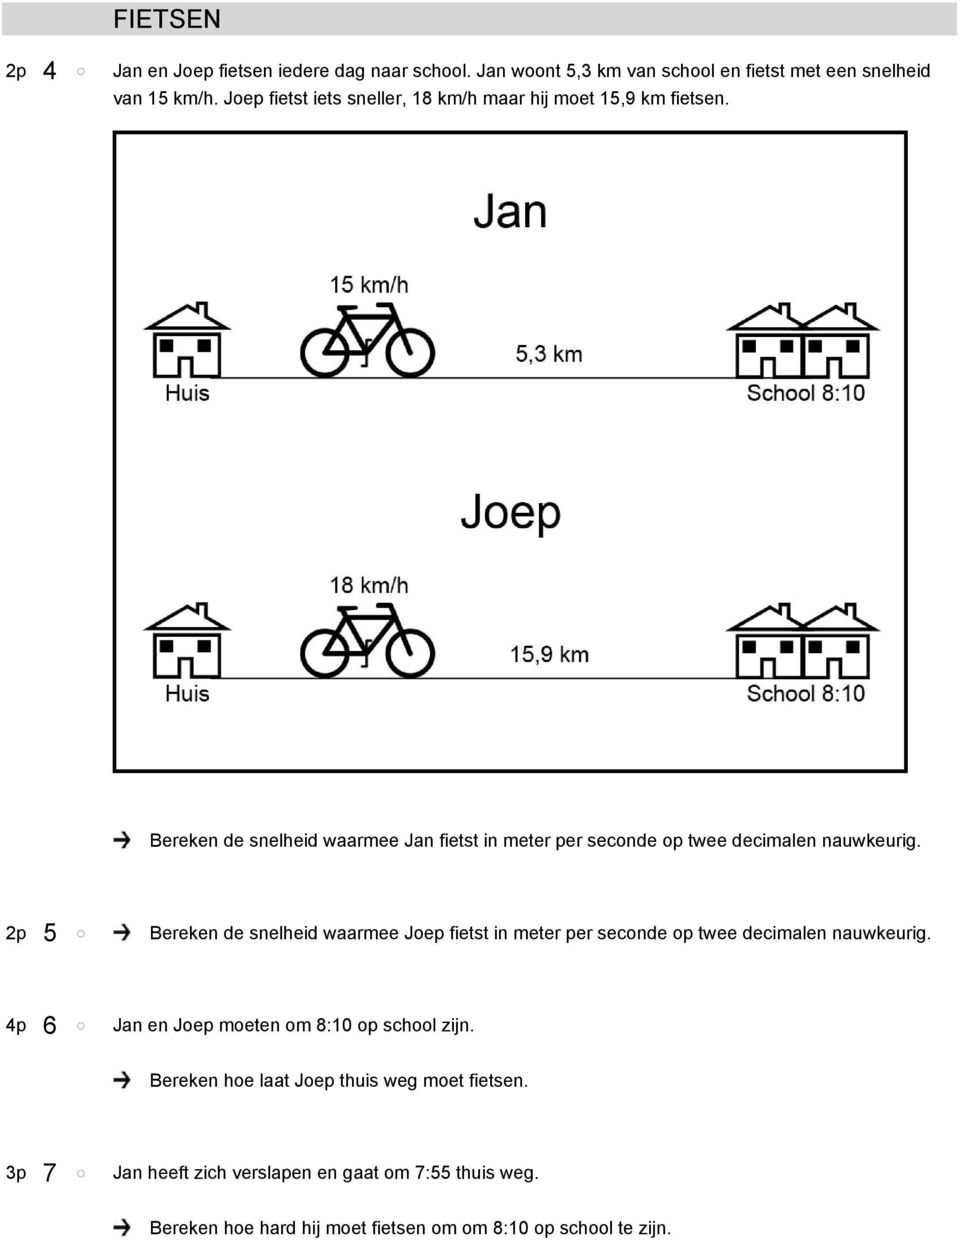 Bereken de snelheid waarmee Jan fietst in meter per seconde op twee decimalen nauwkeurig.